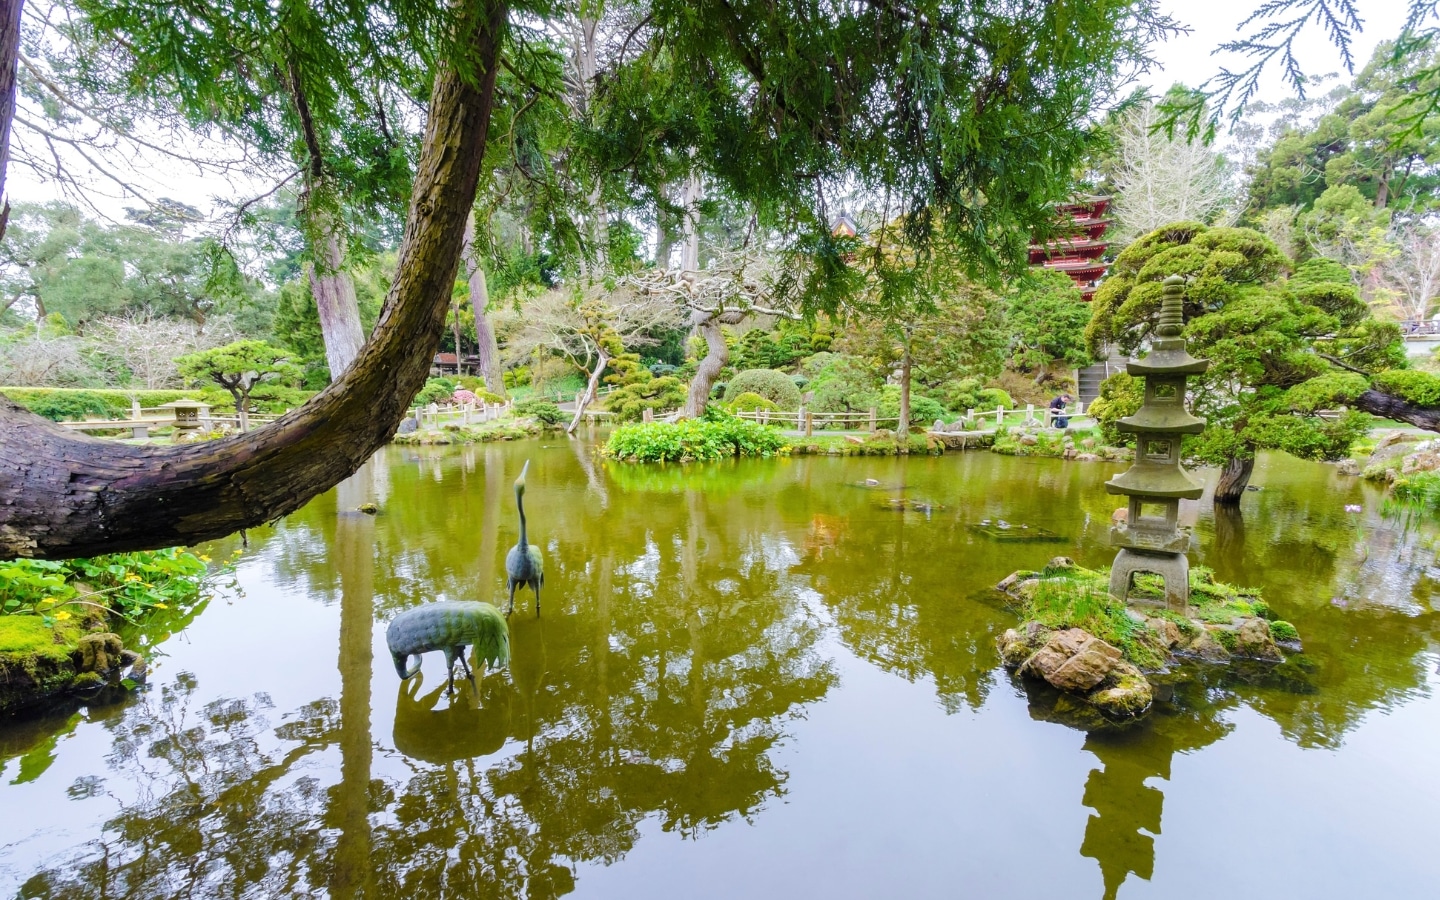 Explore The Japanese Tea Garden